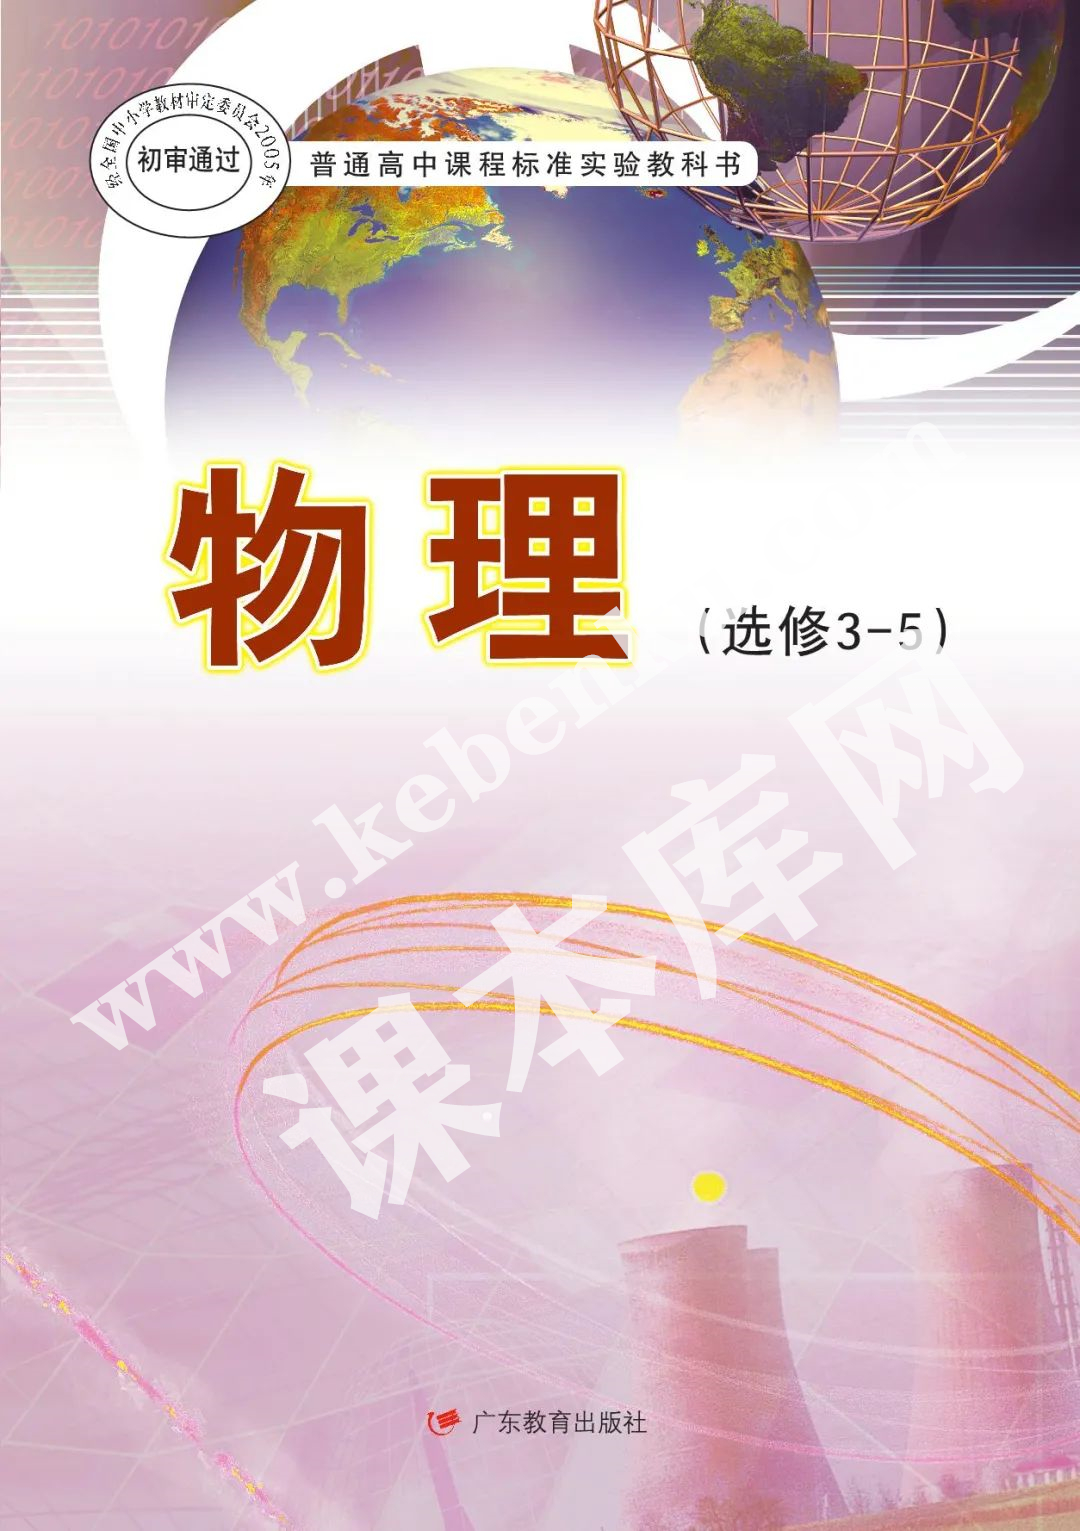 广东教育出版社普通高中课程标准实验教科书高中物理选修3-5(理科生2004版)电子课本